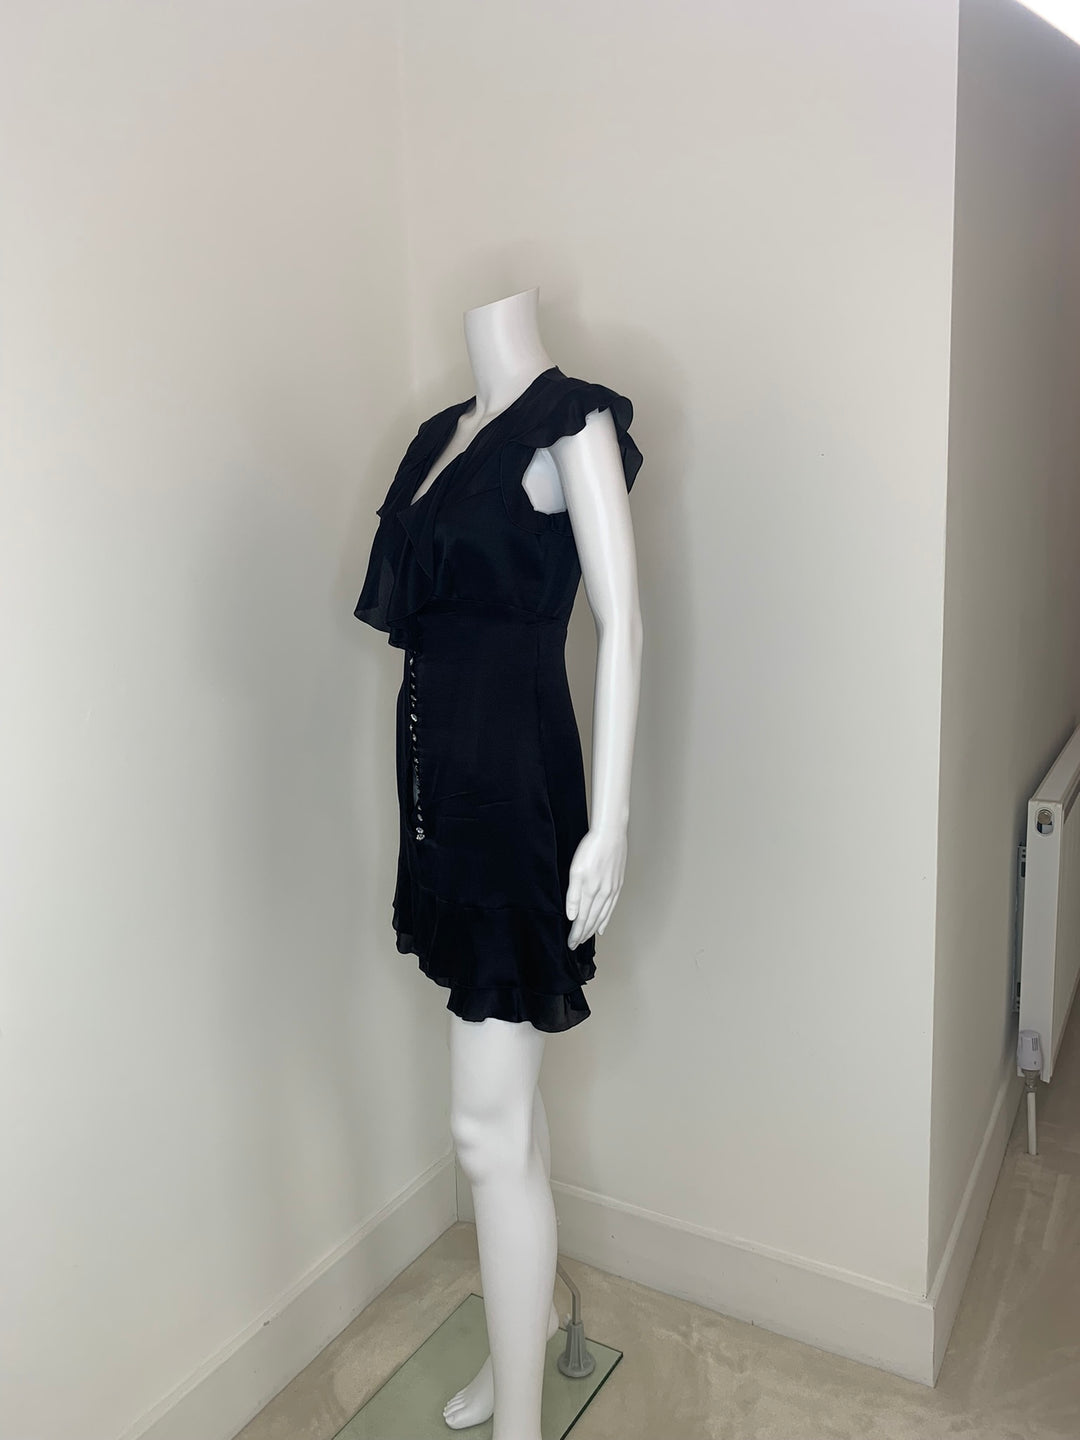 Azzaro, Dress, 2009, Size FR 38